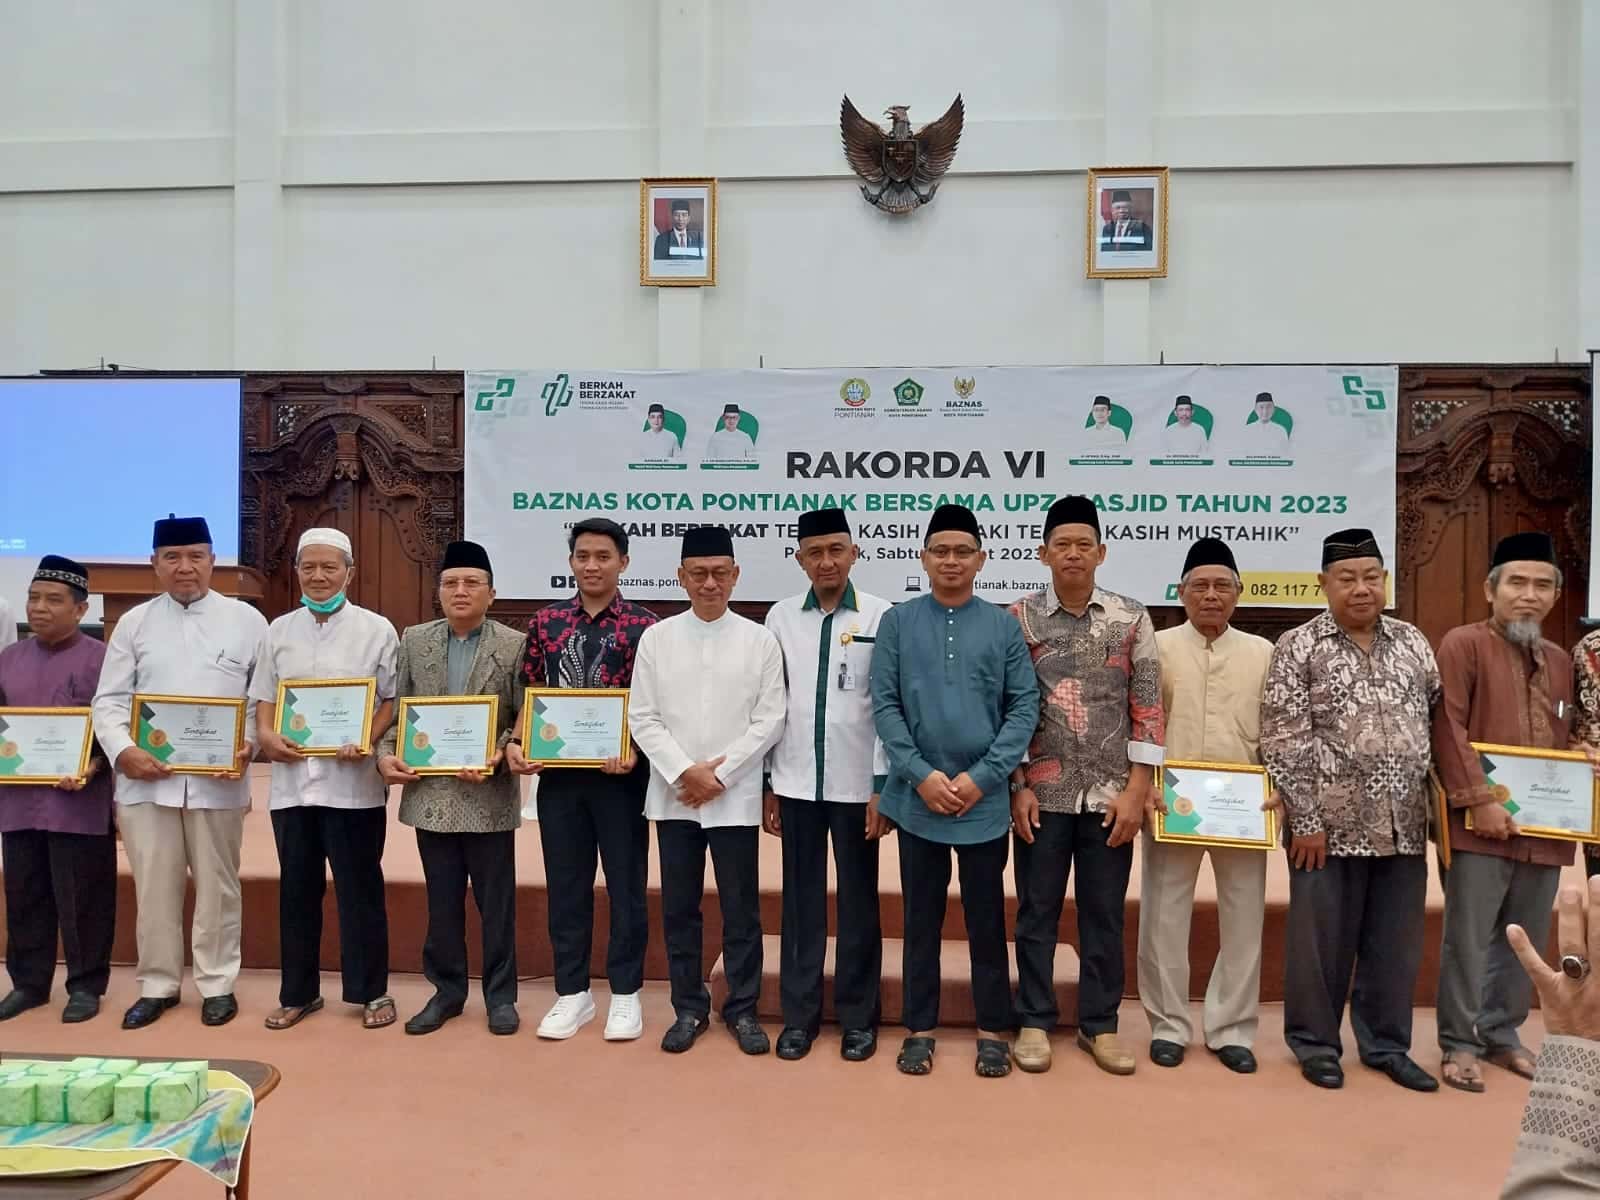 Foto bersama Wali Kota Pontianak, Edi Rusdi Kamtono beserta para UPZ masjid penerima penghargaan dari Baznas Kota Pontianak. (Foto: Prokopim For KalbarOnline.com)